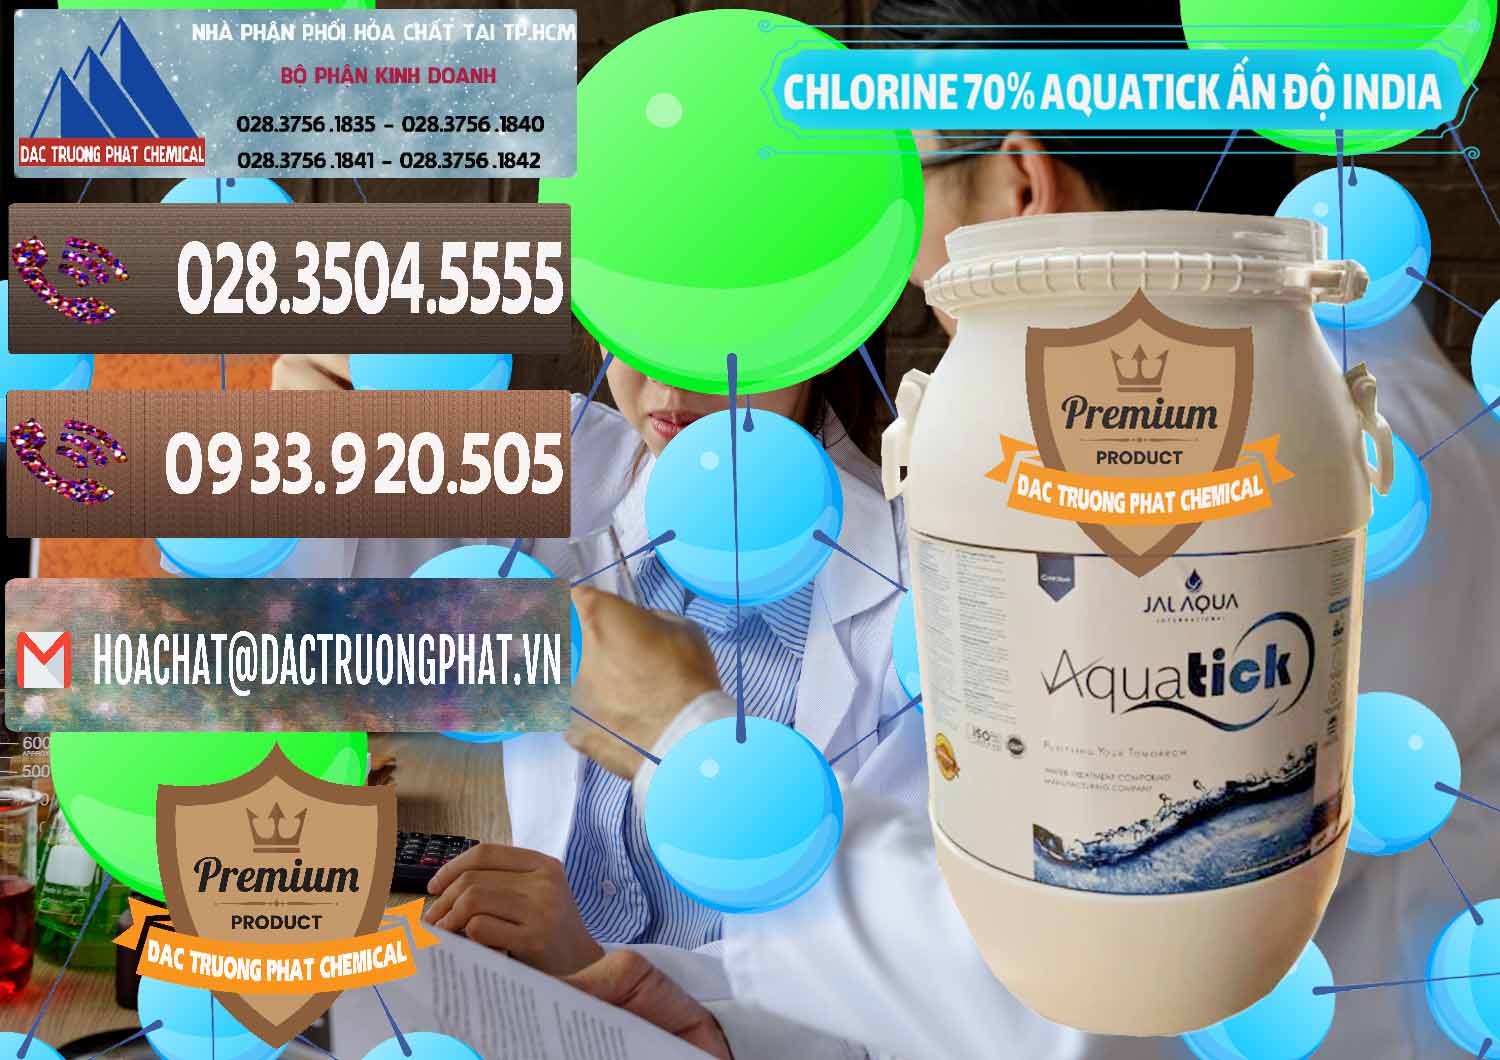 Công ty bán ( cung cấp ) Chlorine – Clorin 70% Aquatick Jal Aqua Ấn Độ India - 0215 - Cung cấp _ bán hóa chất tại TP.HCM - hoachatviet.net